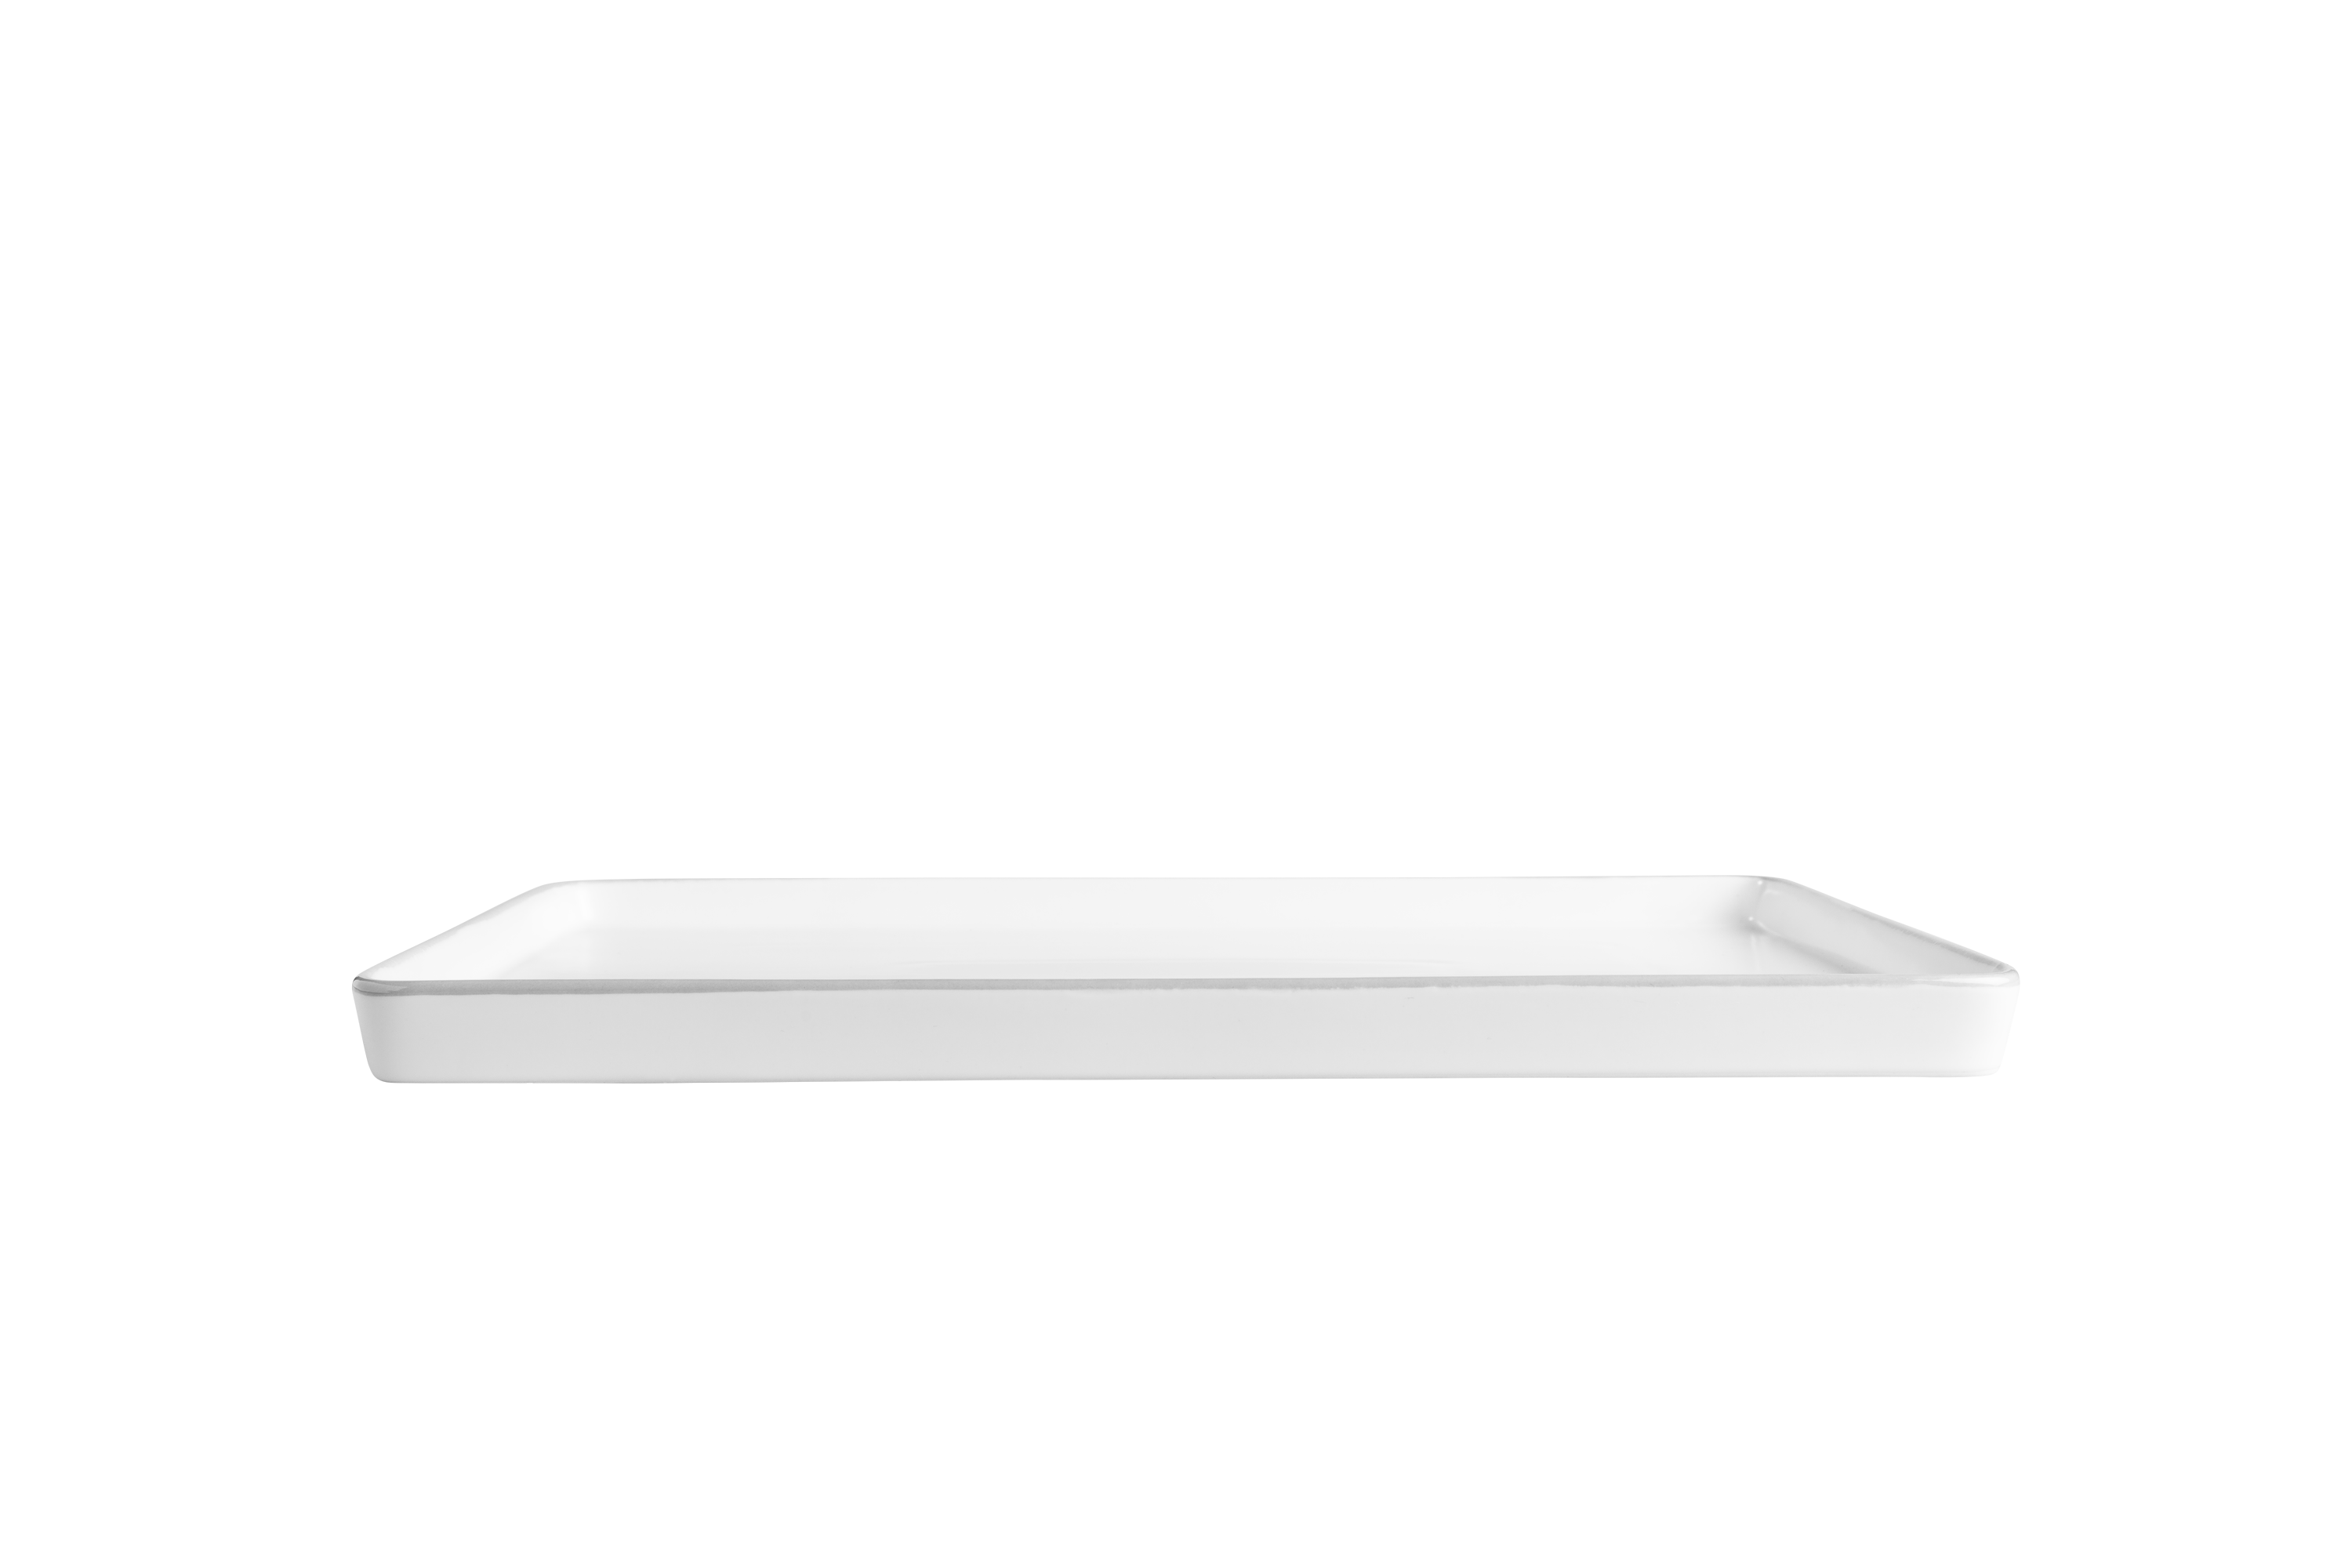 Eine weiße, rechteckige Servierplatte